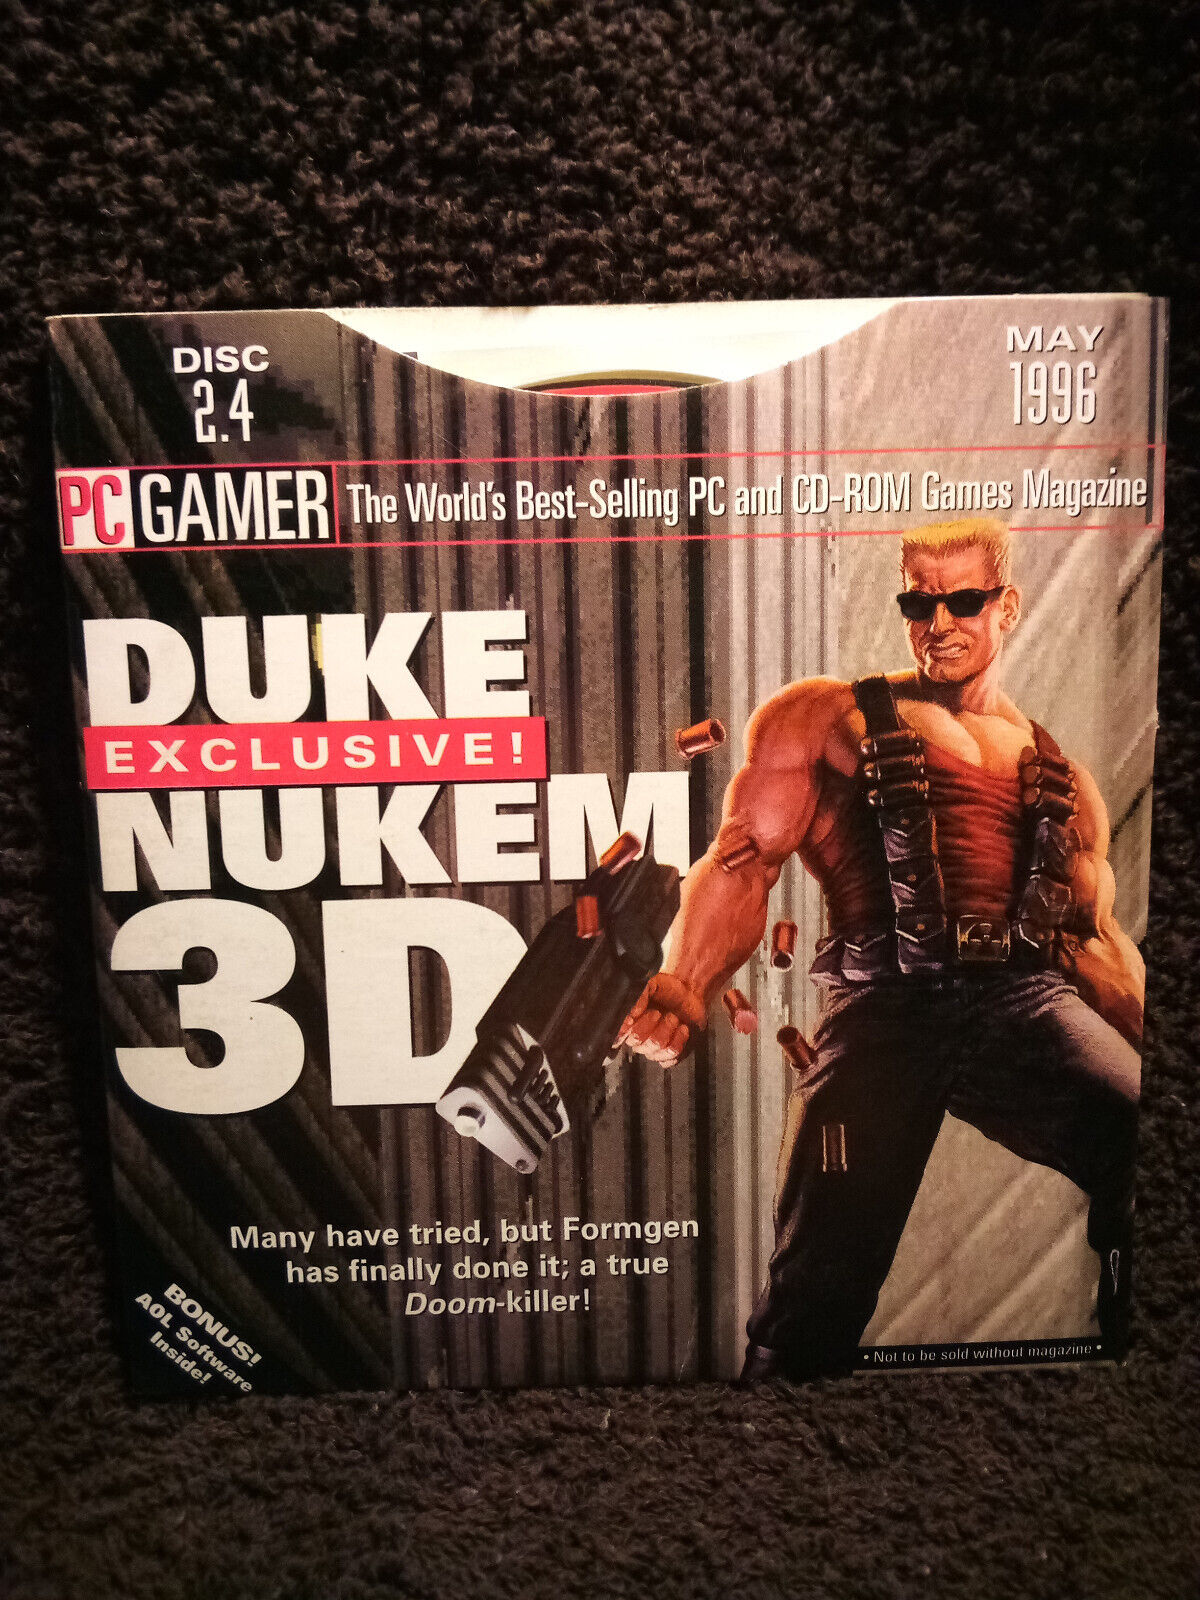 PC GAMER DUKE NUKEM 3D Disc 2.4 (May 1996)